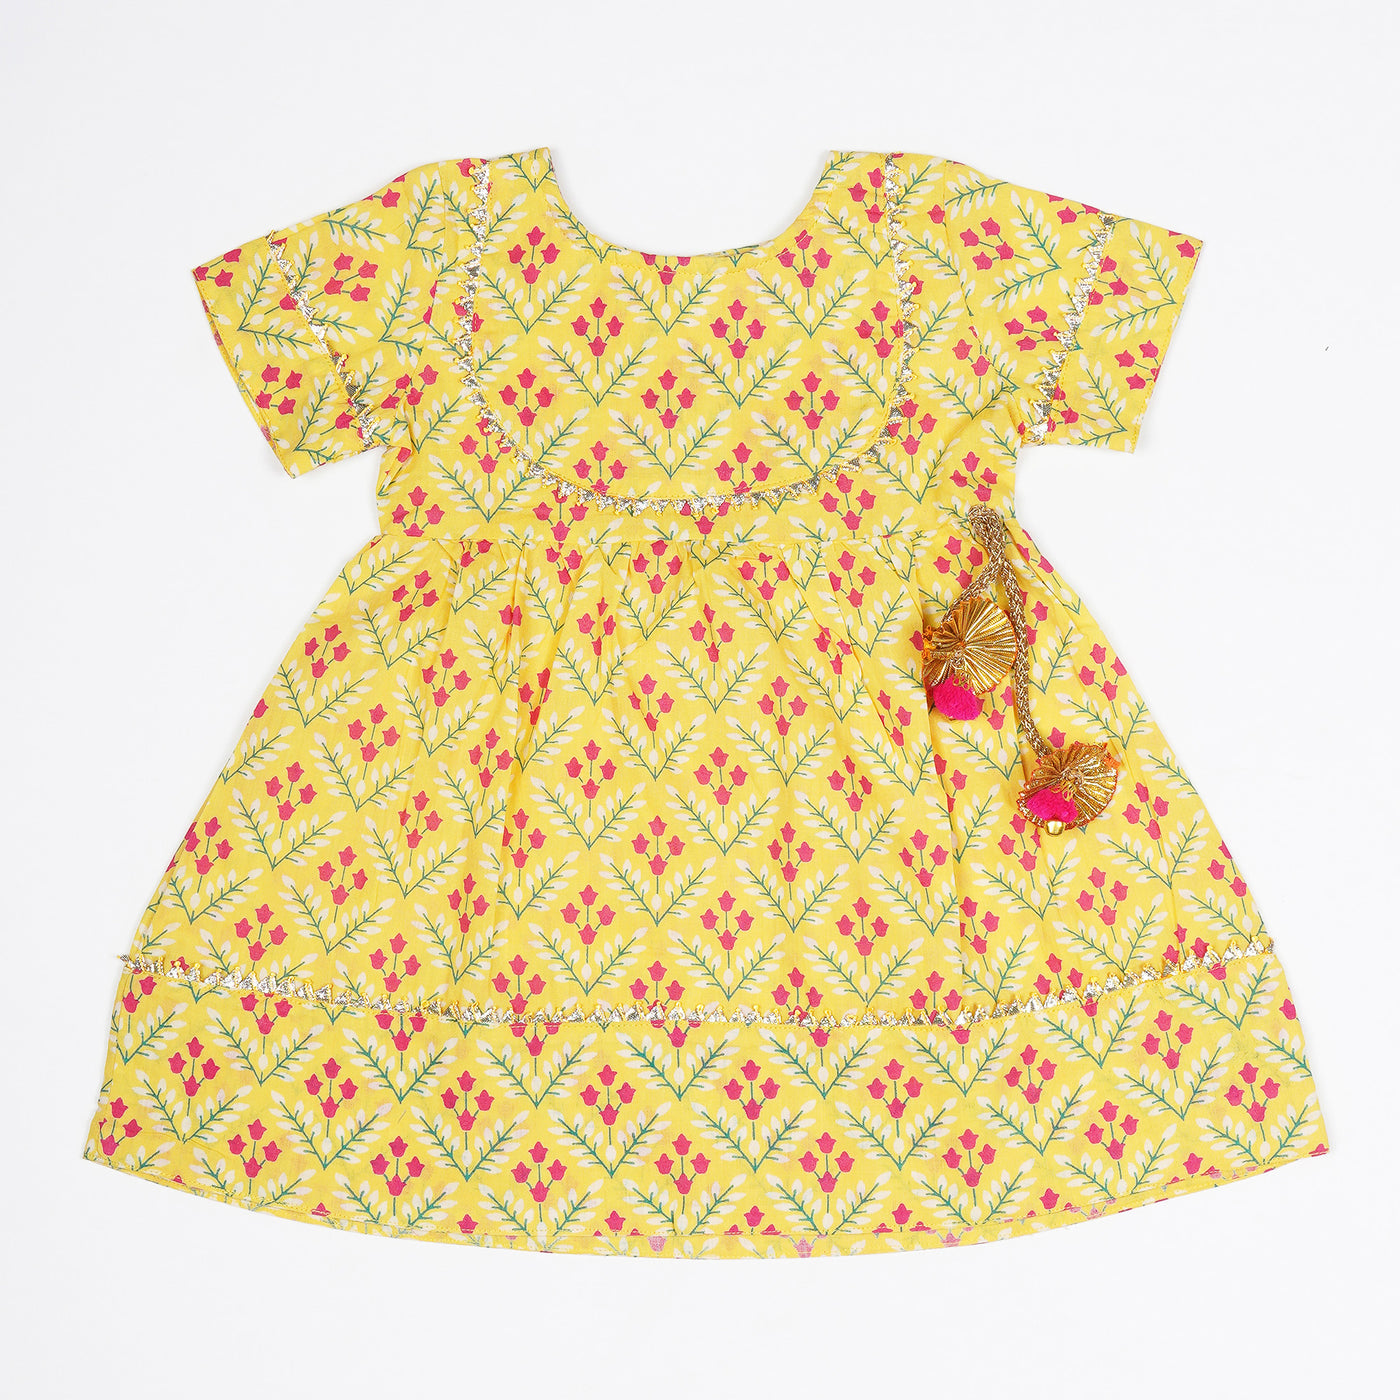 JAANU - Yellow Floral Toddler Girls Dress